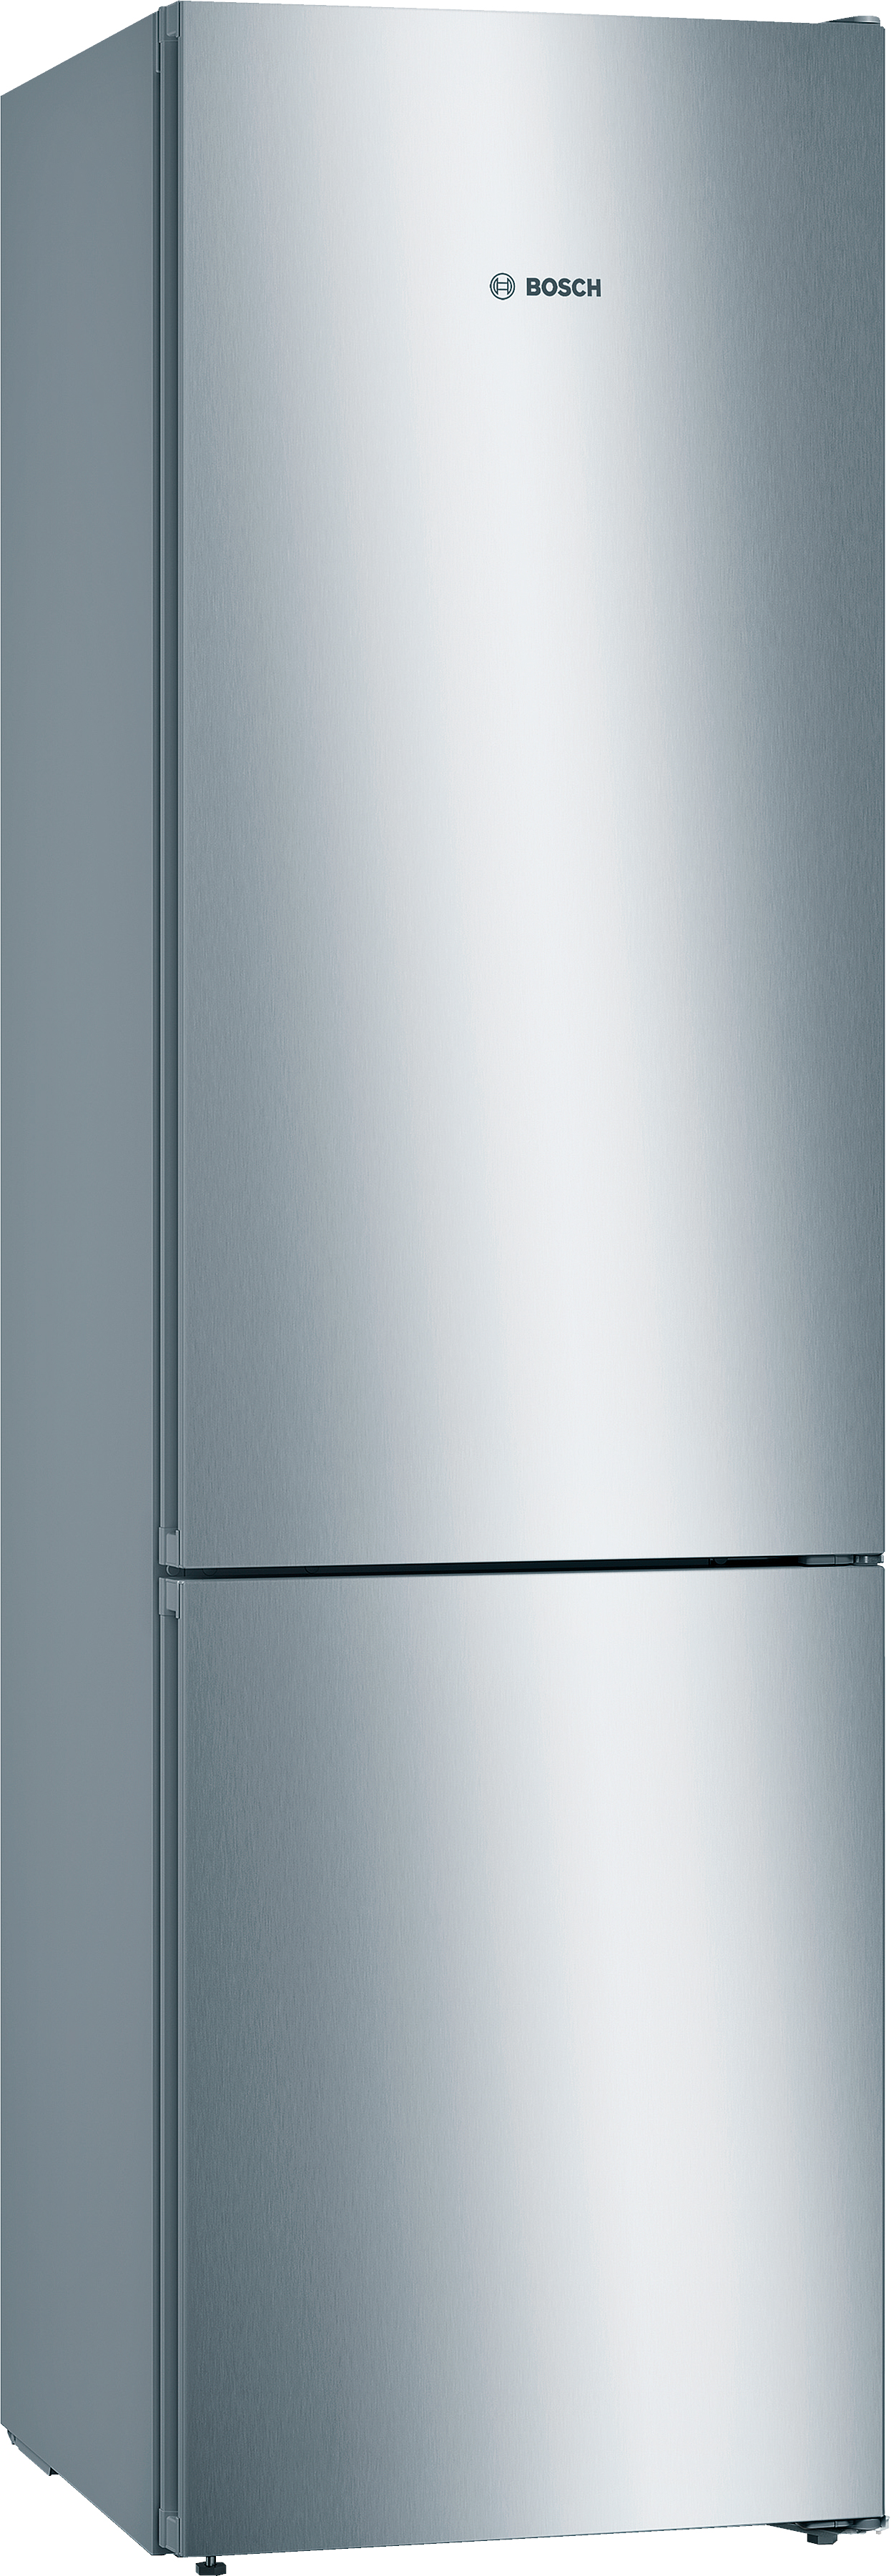 Холодильник Bosch KGN39UL316 в интернет-магазине, главное фото